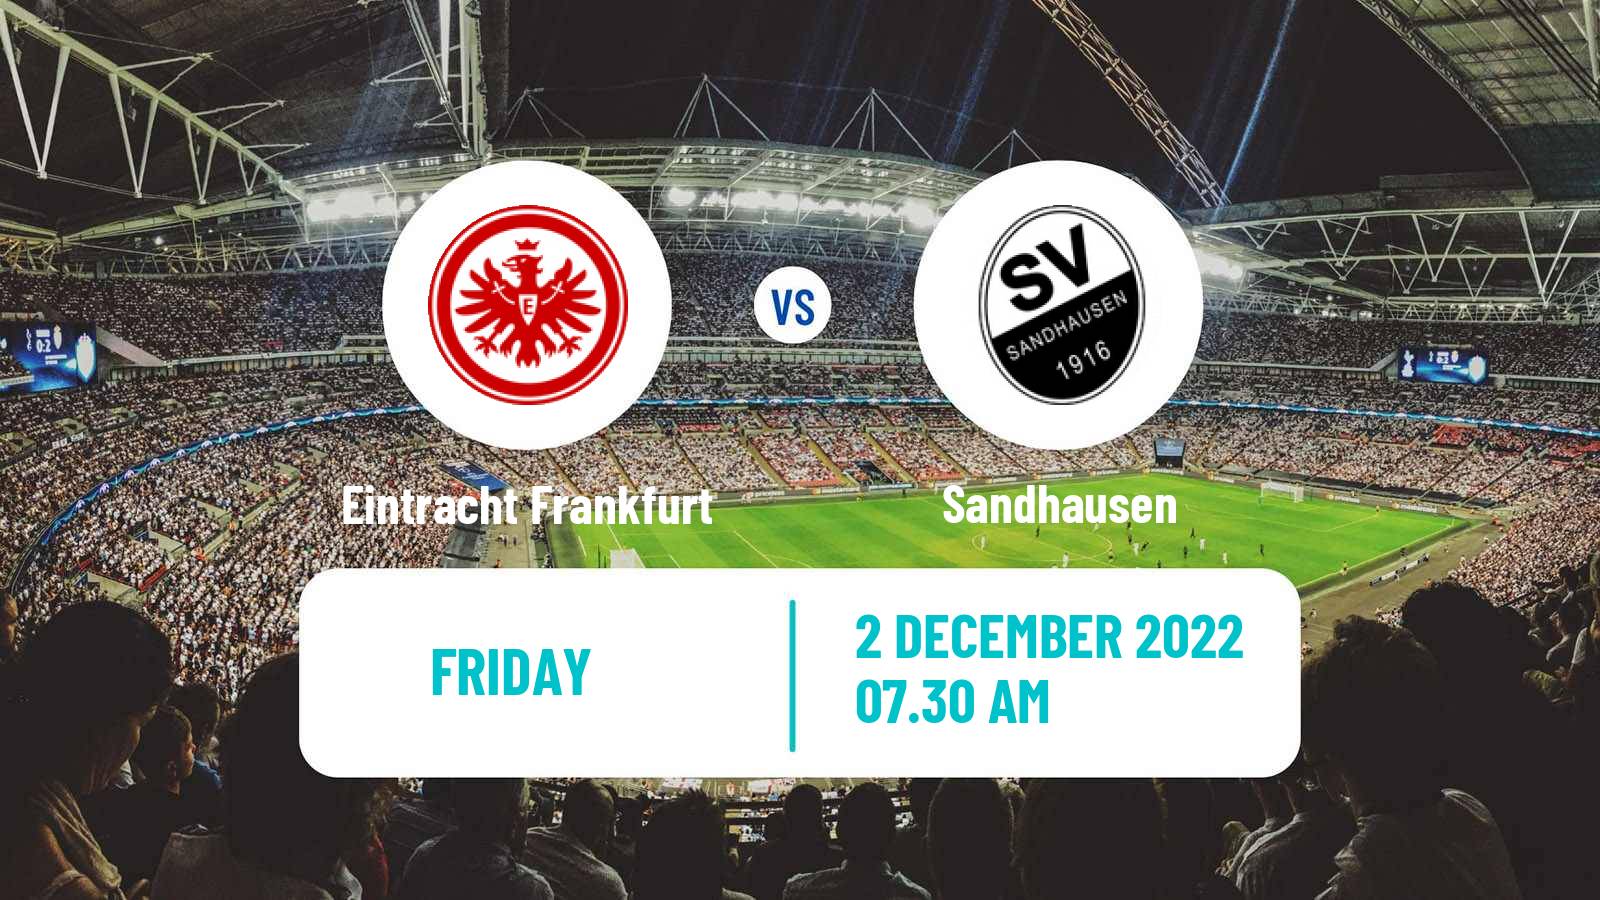 Soccer Club Friendly Eintracht Frankfurt - Sandhausen